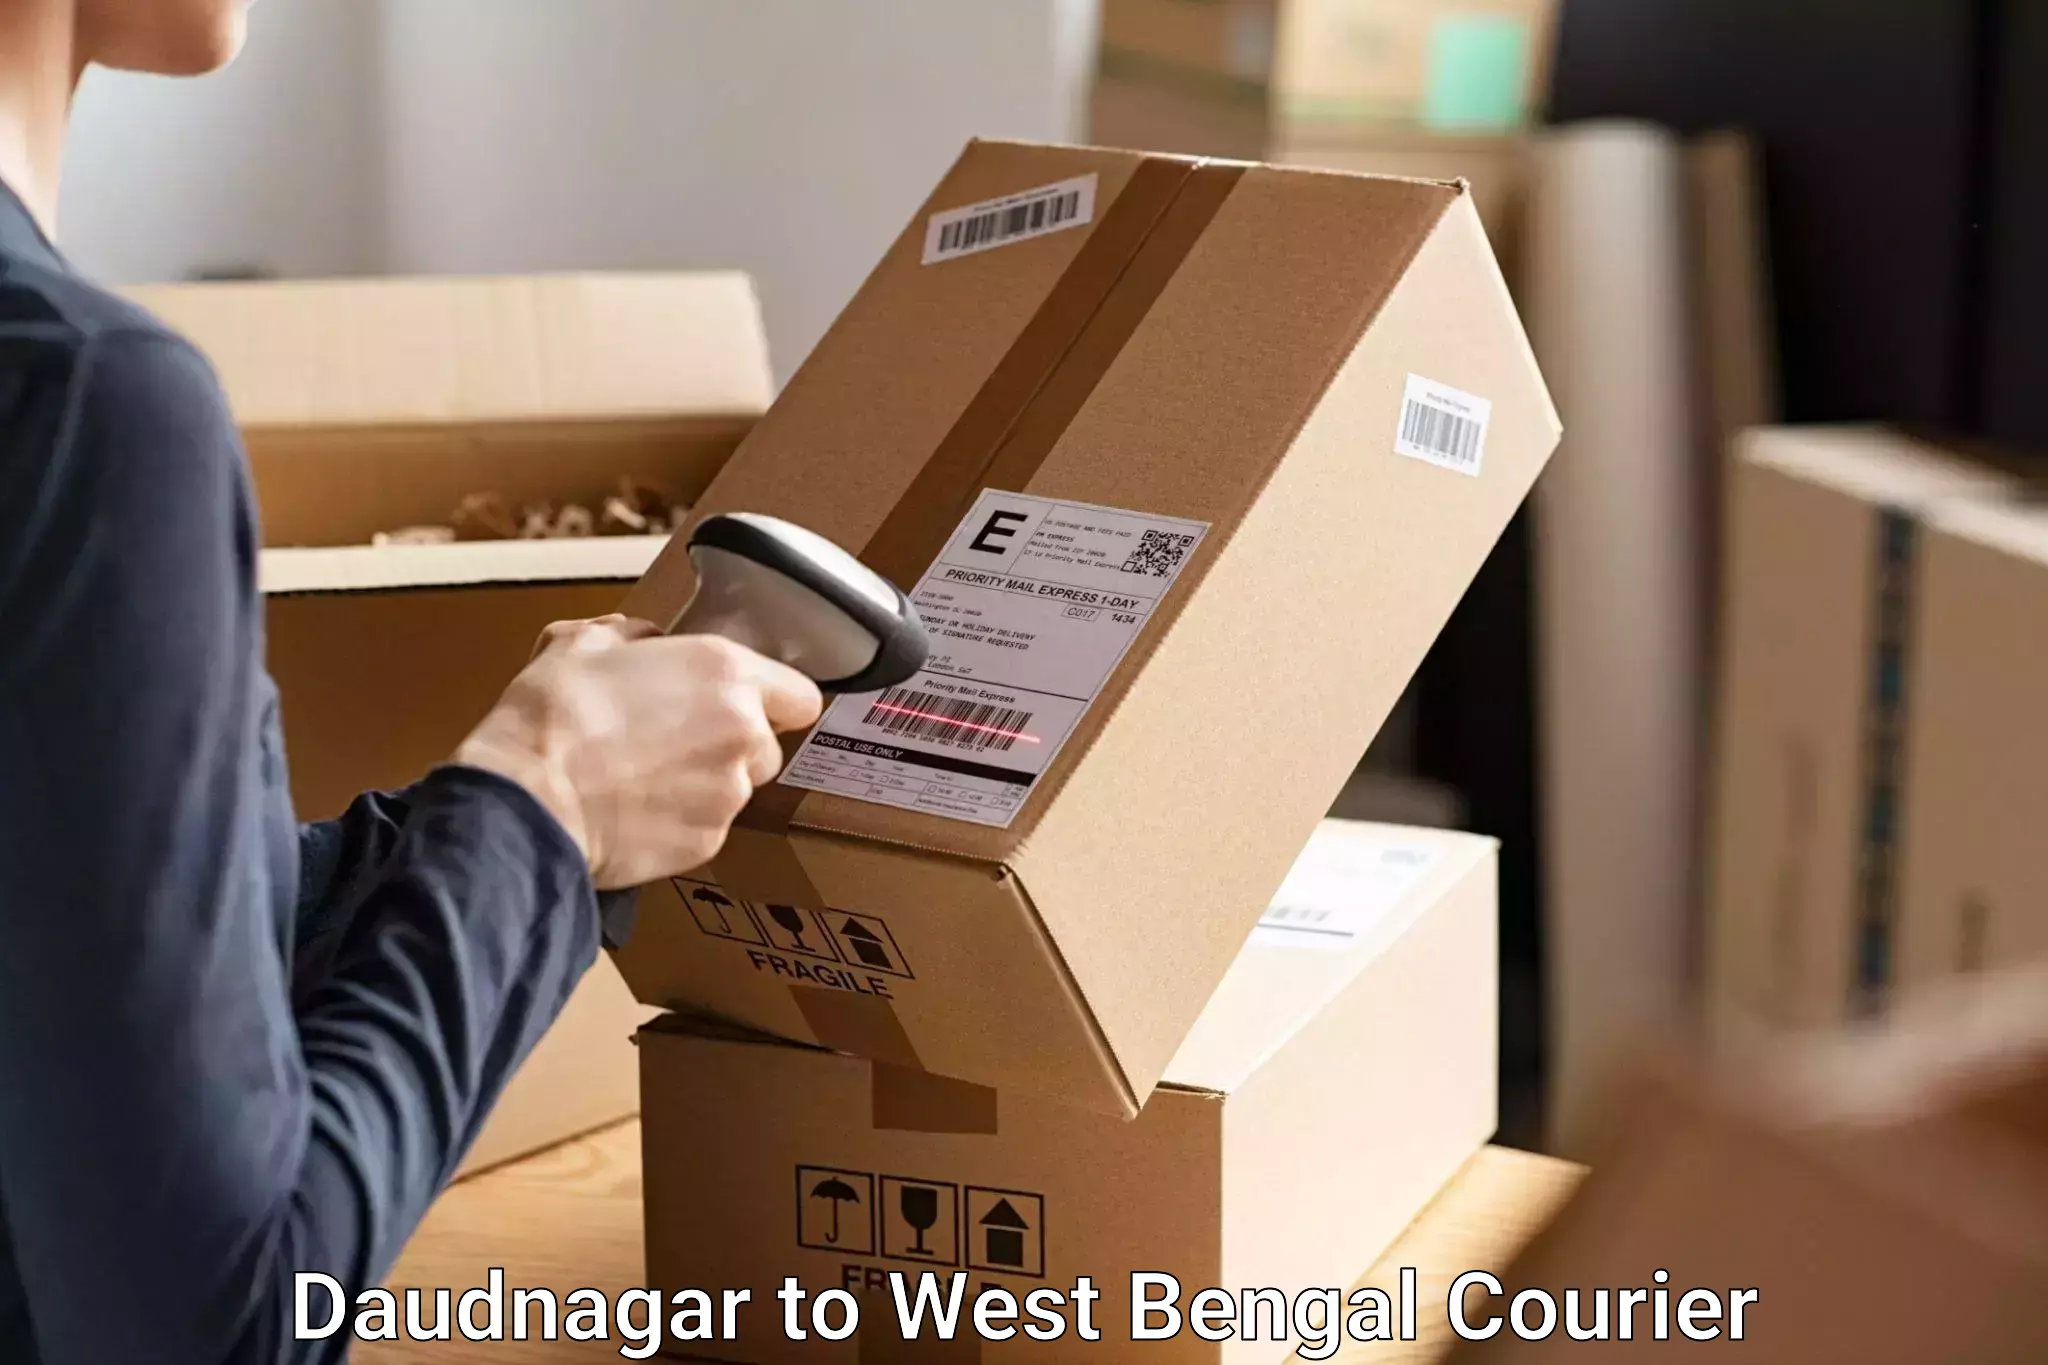 Baggage transport technology Daudnagar to Kolkata